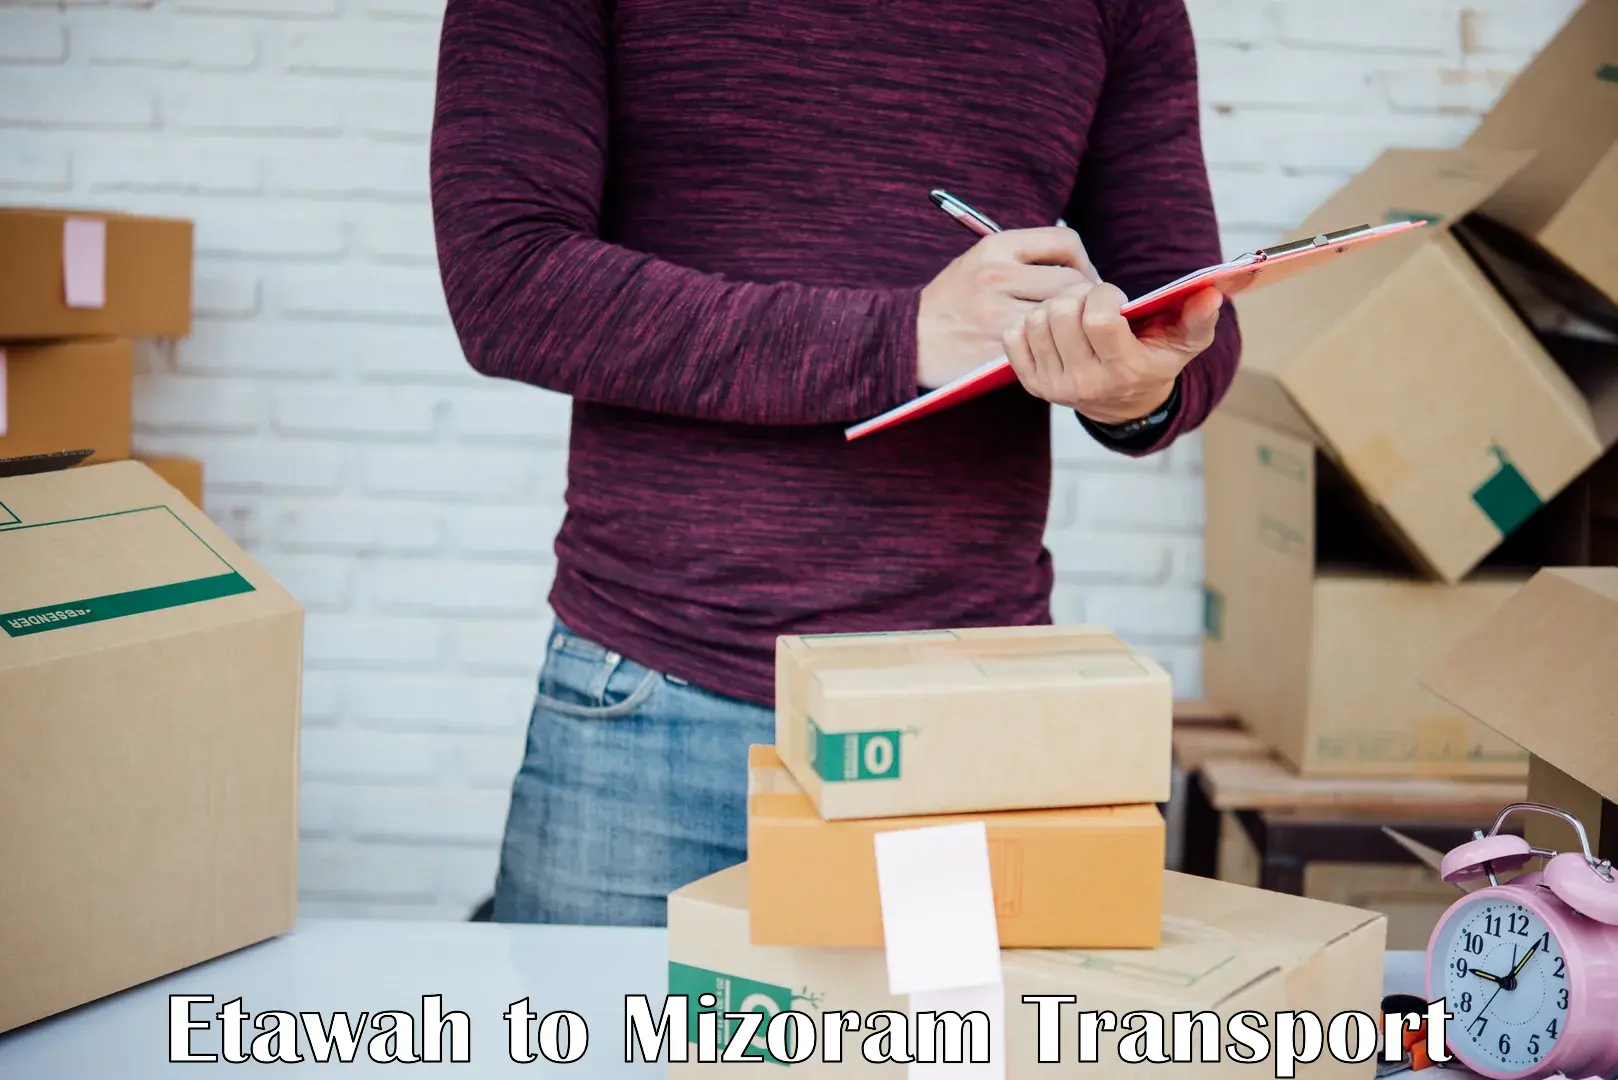 Furniture transport service Etawah to NIT Aizawl